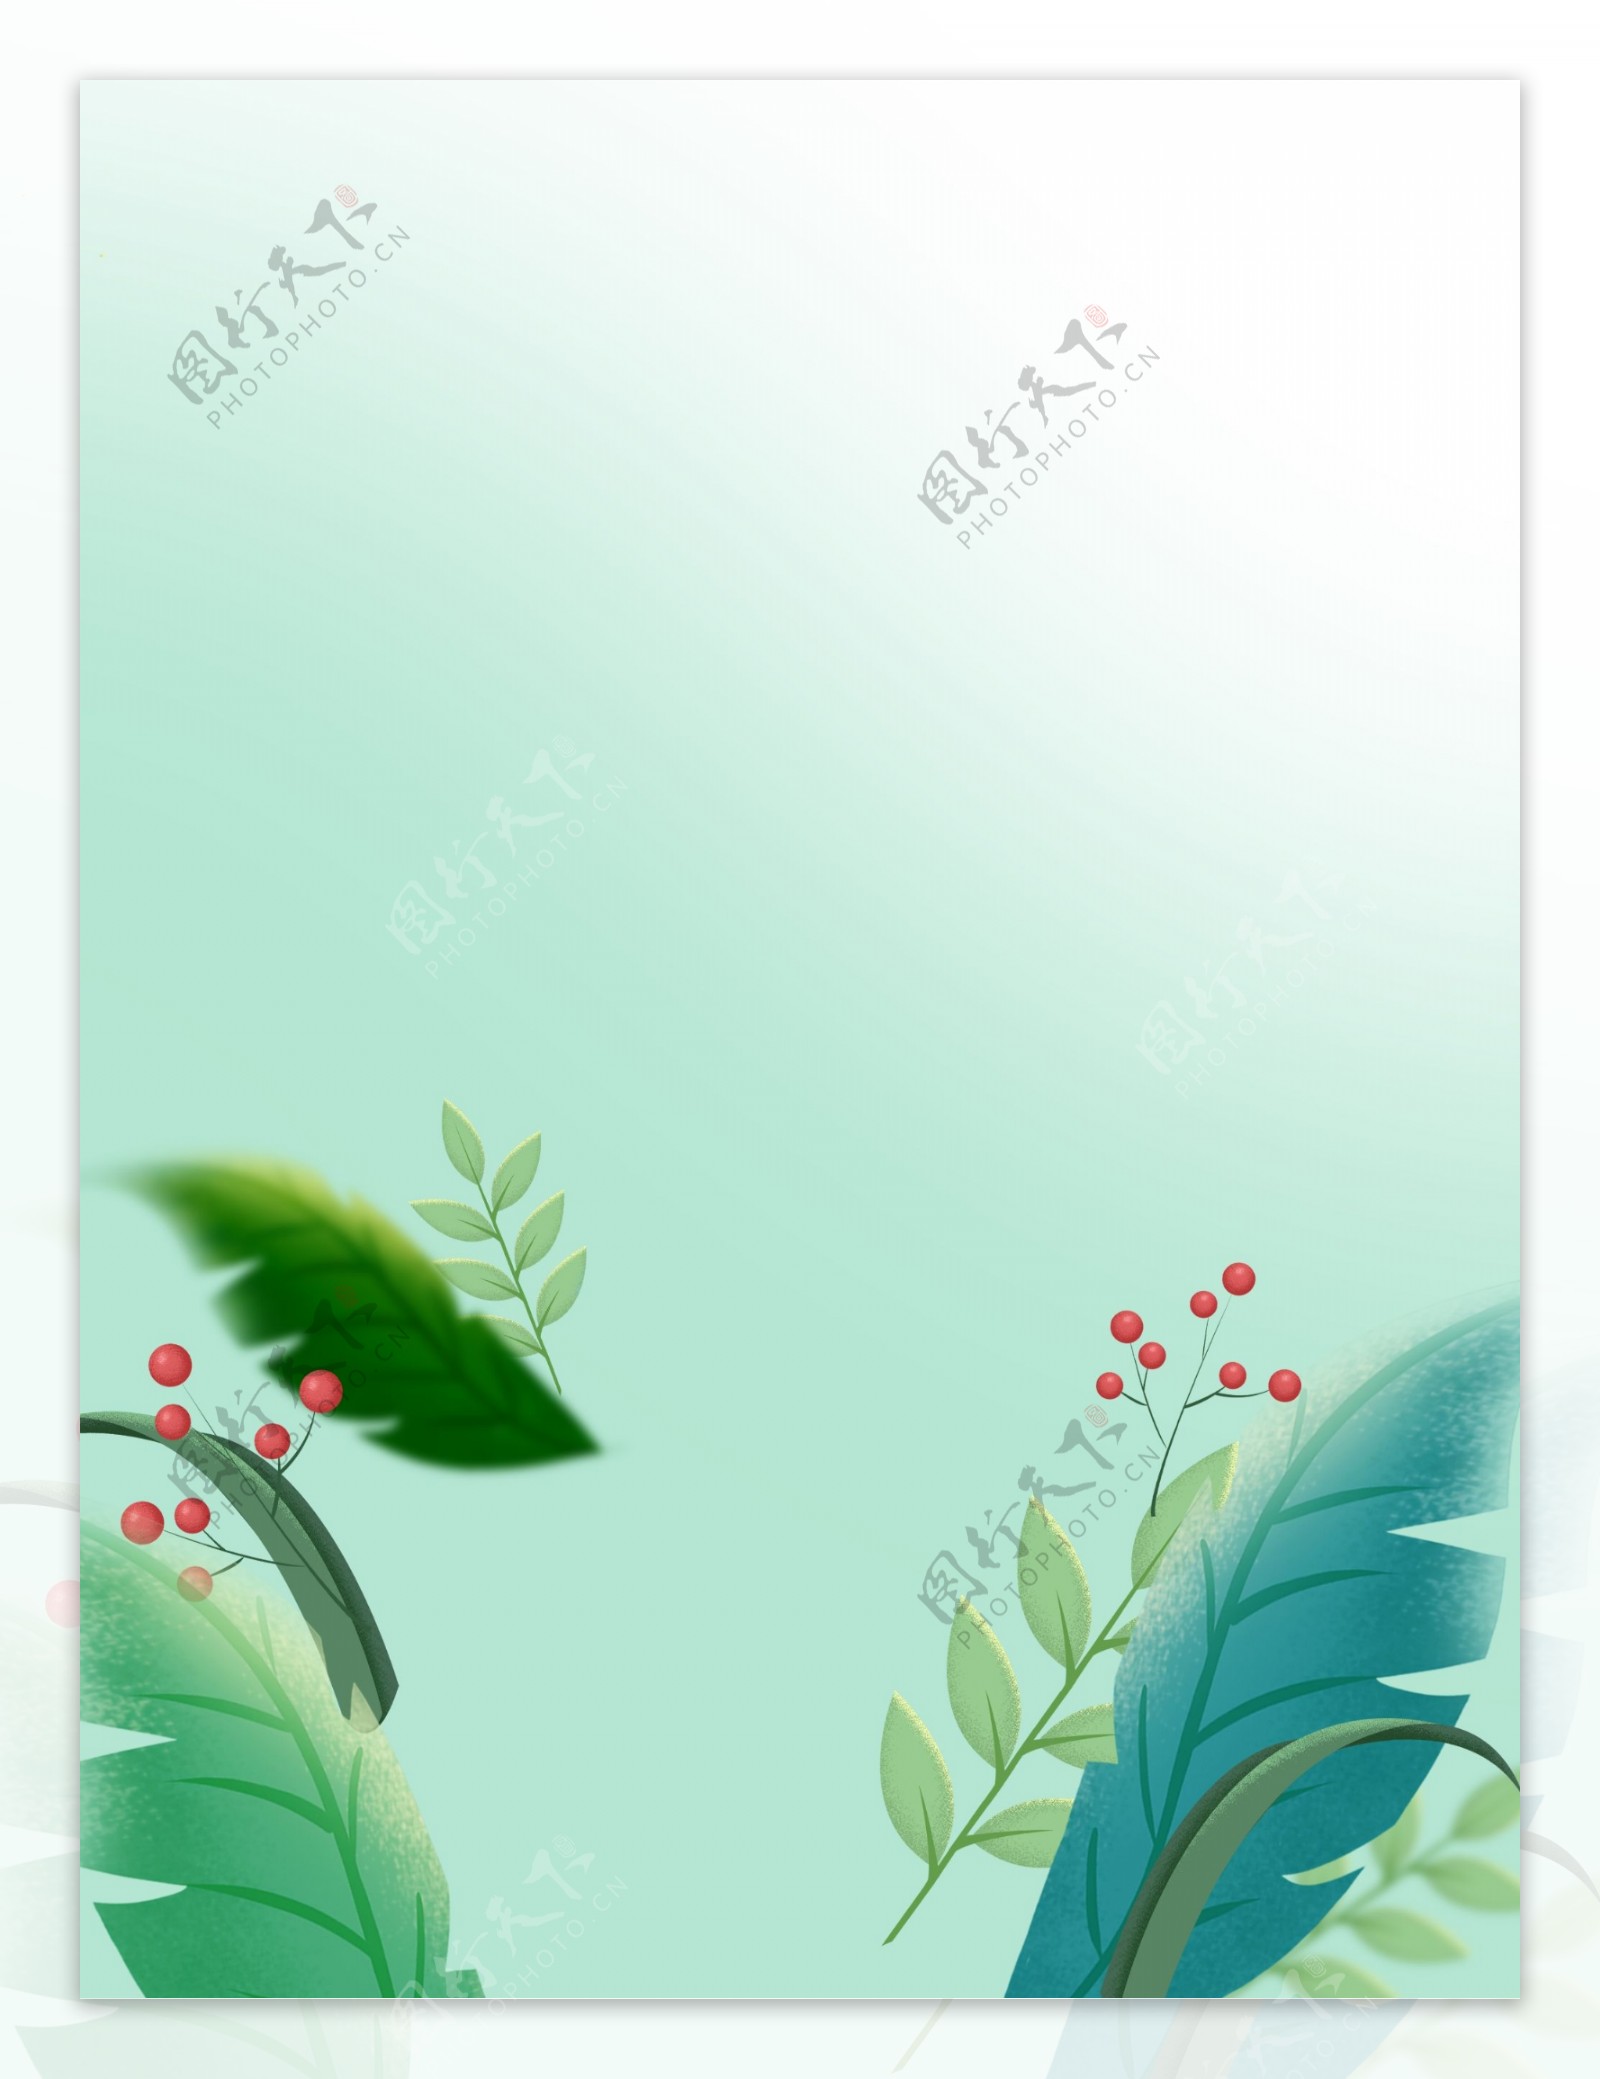 手绘水彩绿色植物背景素材